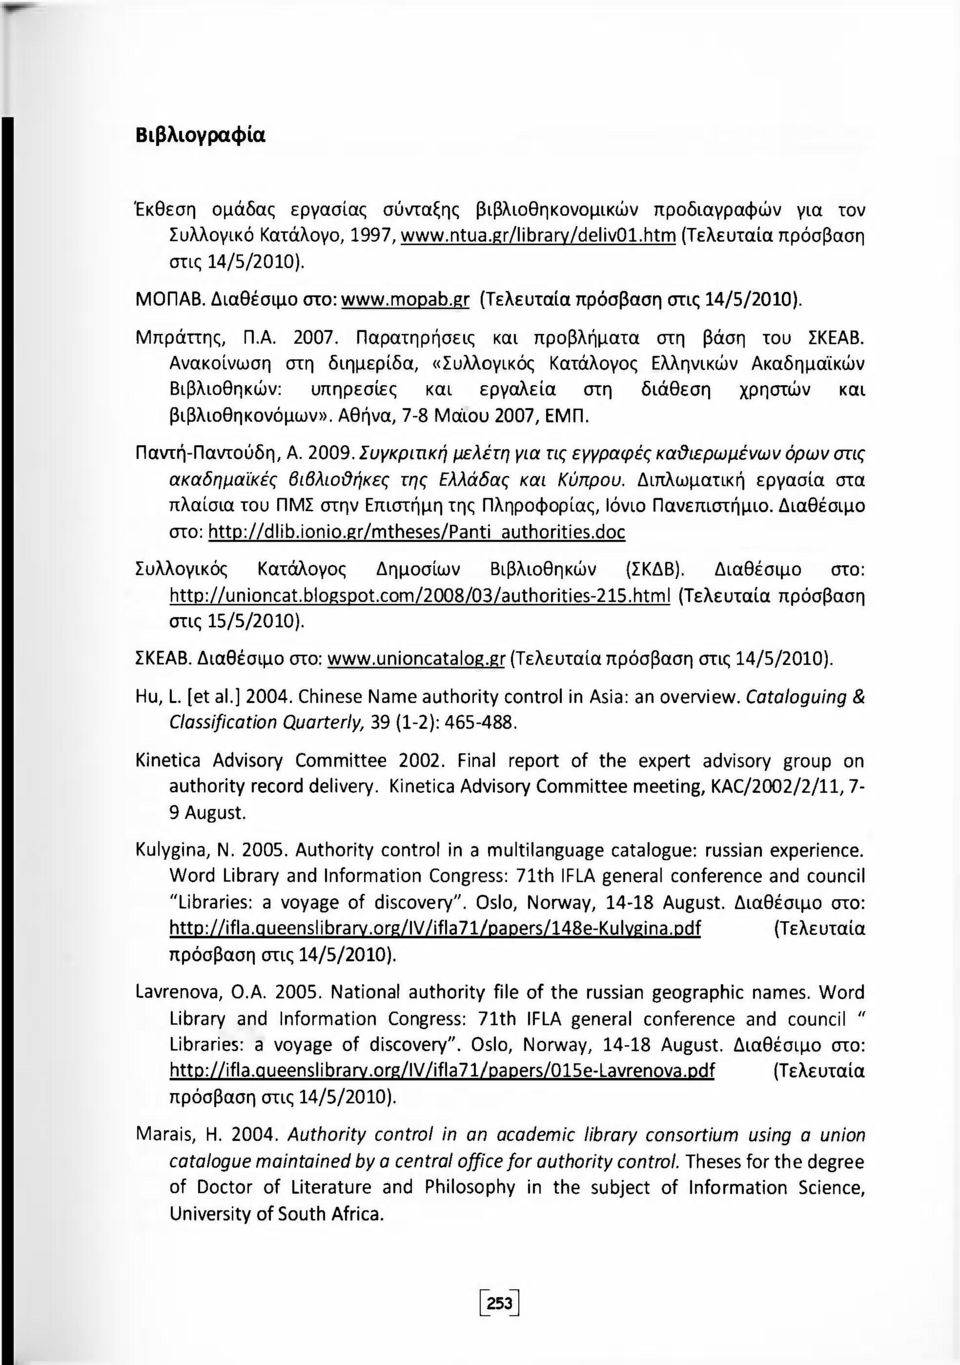 Ανακοίνωση στη διημερίδα, «Συλλογικός Κατάλογος Ελληνικών Ακαδημαϊκών Βιβλιοθηκών: υπηρεσίες και εργαλεία στη διάθεση χρηστών και βιβλιοθηκονόμων». Αθήνα, 7-8 Μάιου 2007, ΕΜΠ. Παντή-Παντούδη, Α. 2009.